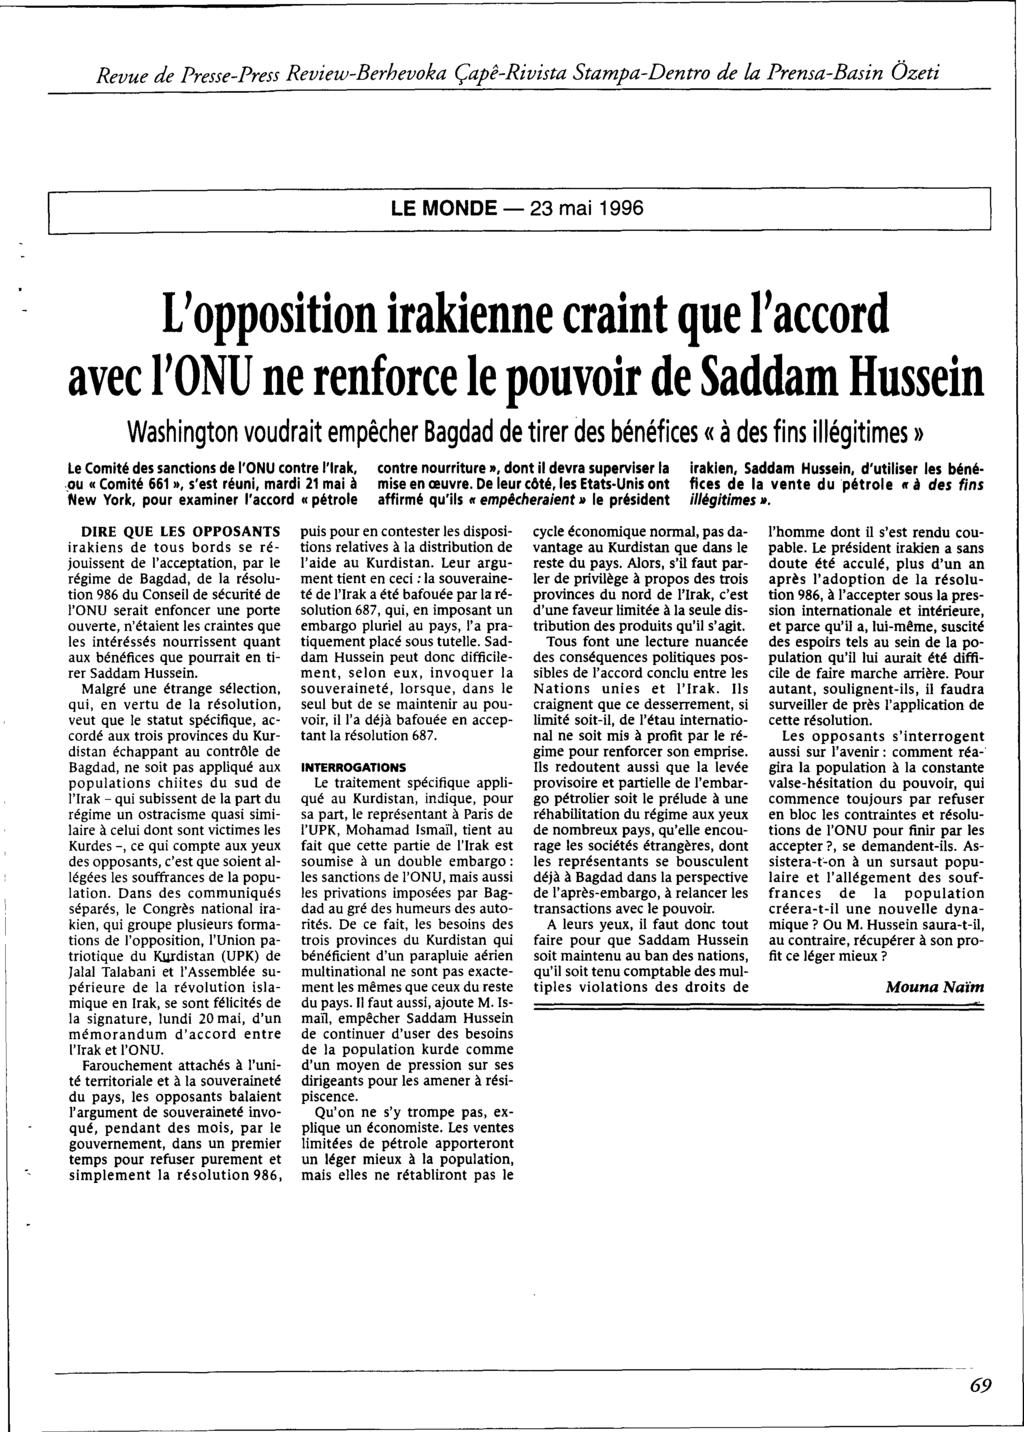 LE MONDE - 23 mai 1996 L'opposition irakienne craint que l'accord avec l'onu ne renforce le pouvoir de Saddam Hussein Washington voudrait empêcher Bagdad de tirer des bénéfices «à des fins